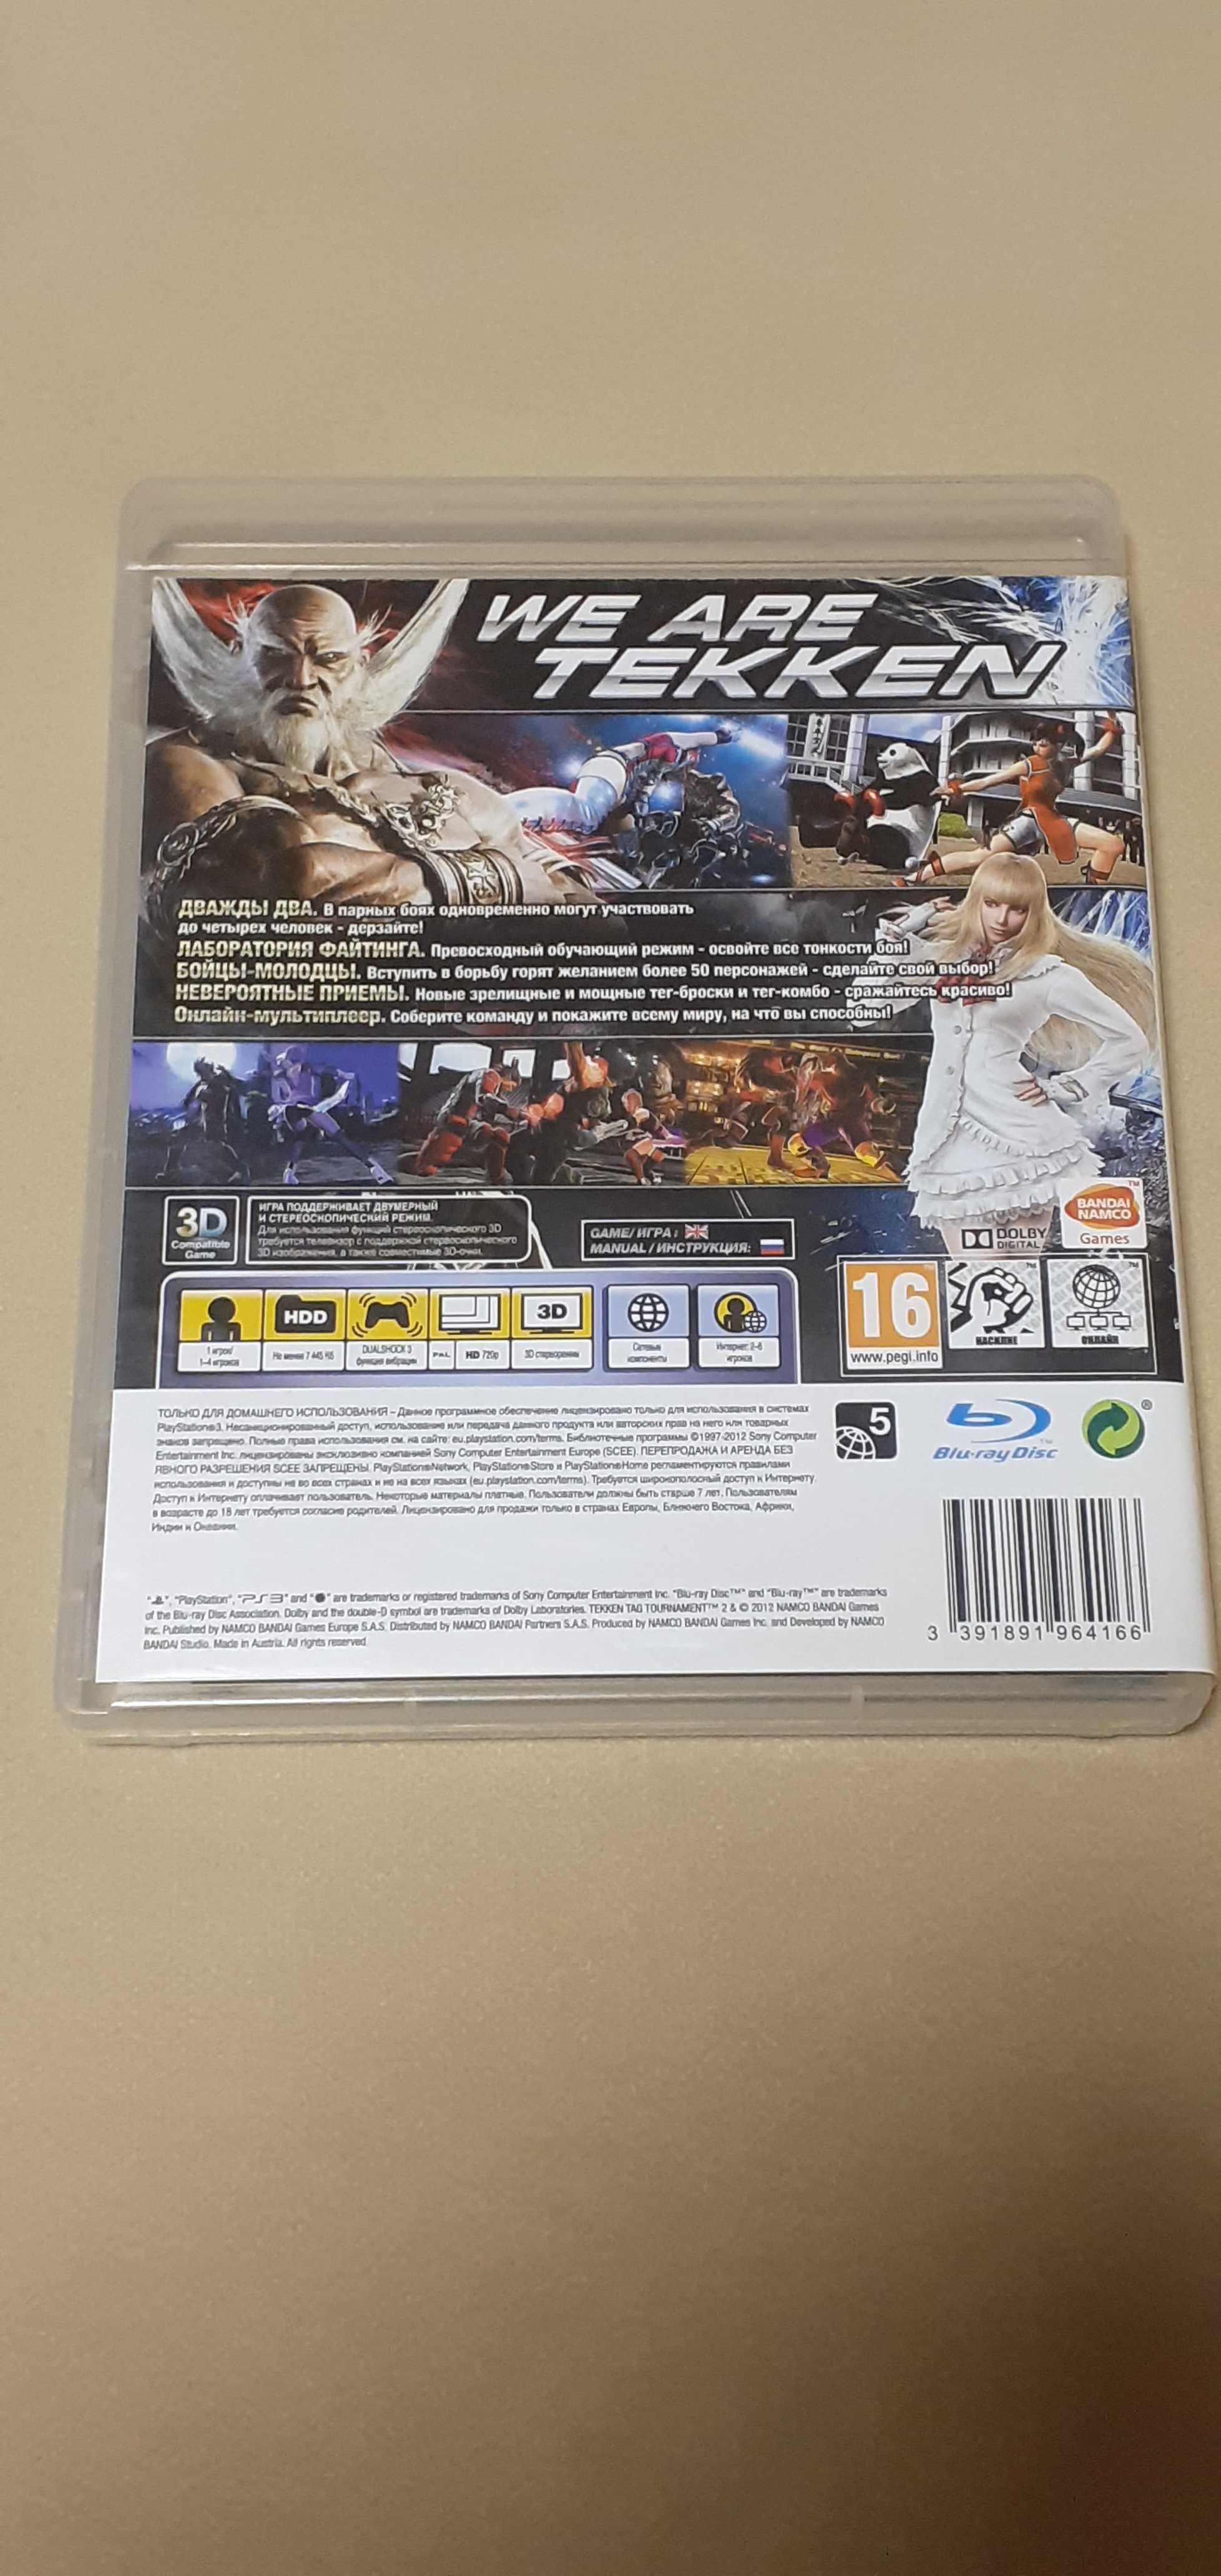 Продам игровой диск tekken t.t.2 на Playstation 3, за 6тысяч тенге